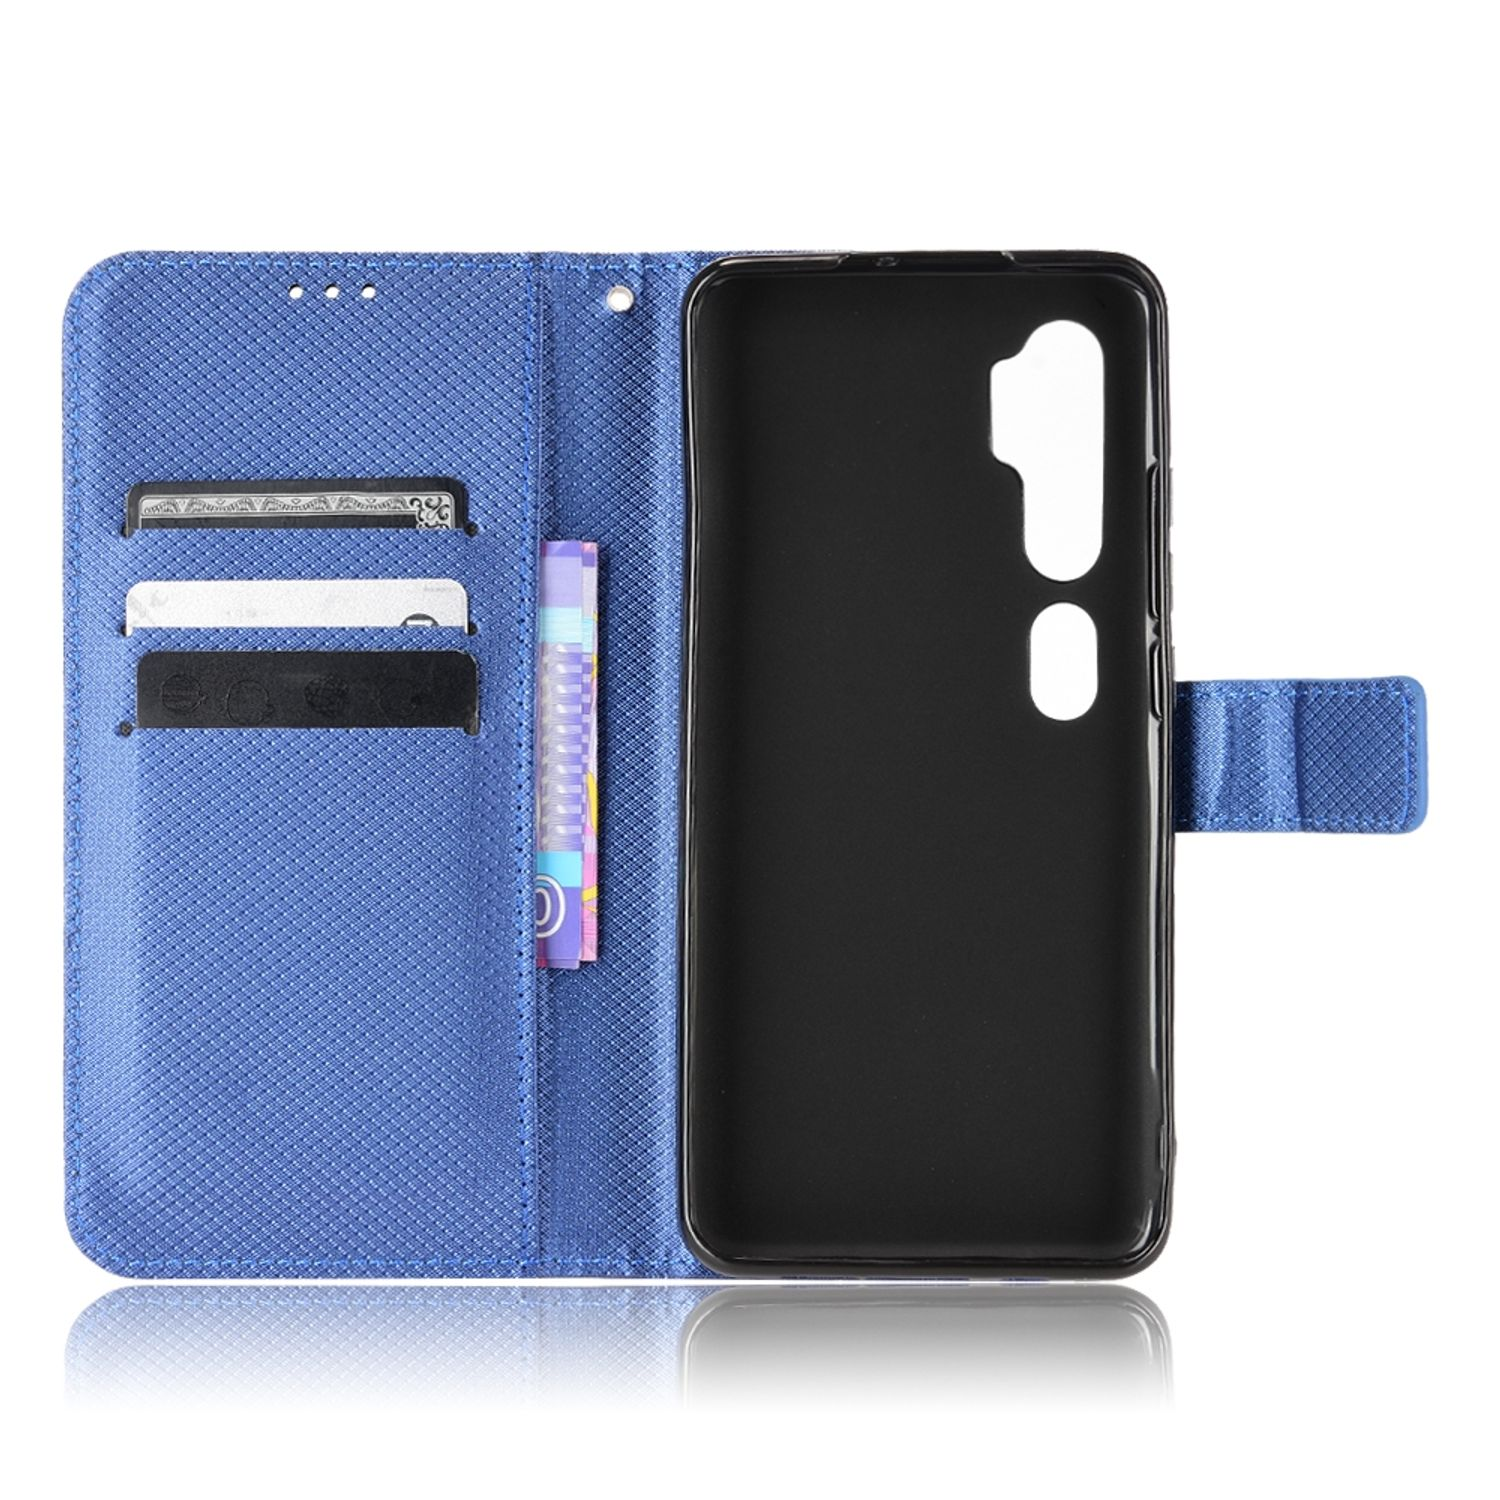 10 Mi DESIGN Pro, Note Blau KÖNIG Bookcover, Book Case, Xiaomi,